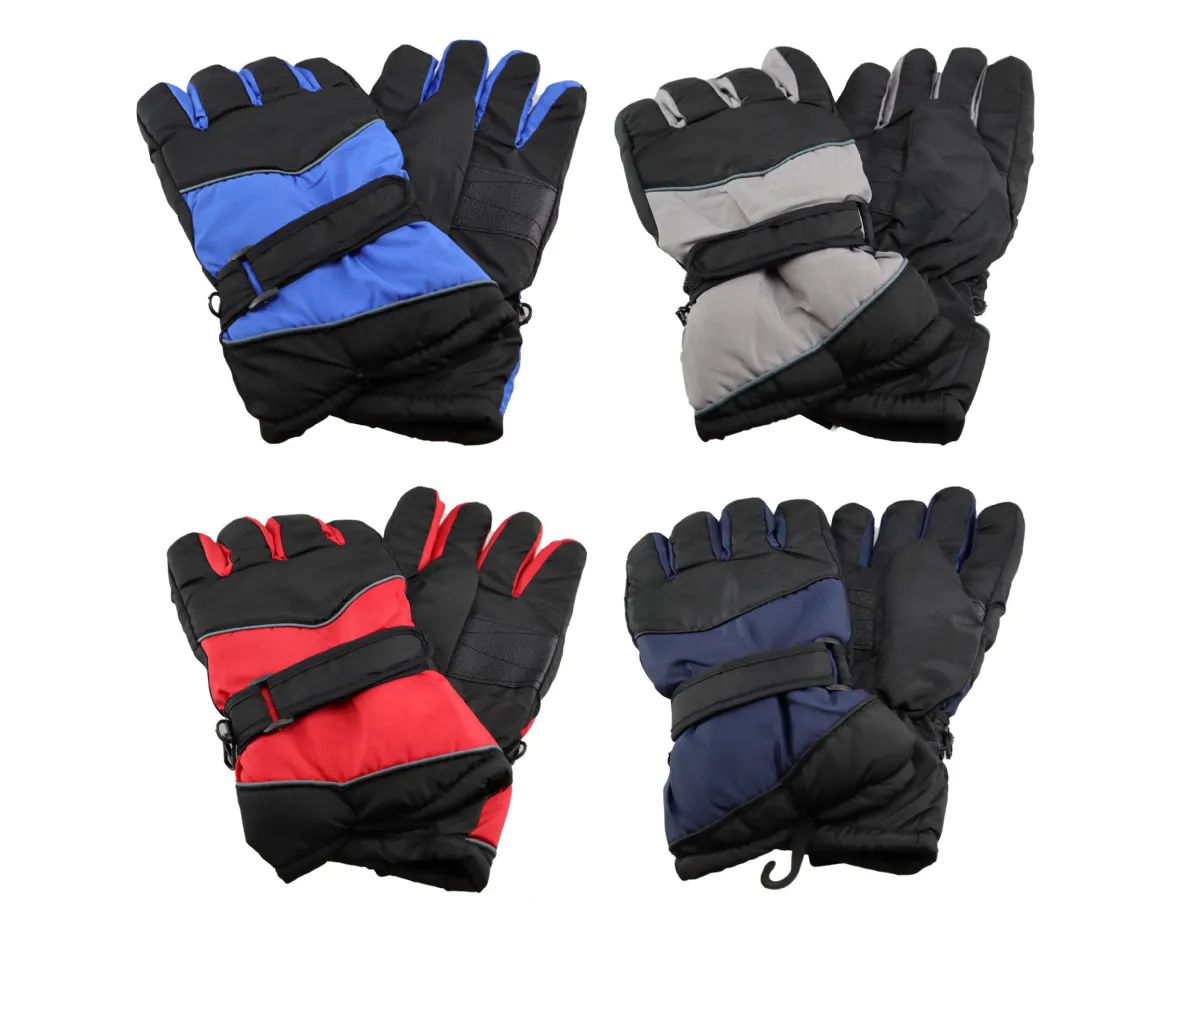 48 Pieces of Men Water Resistant Ski Glove